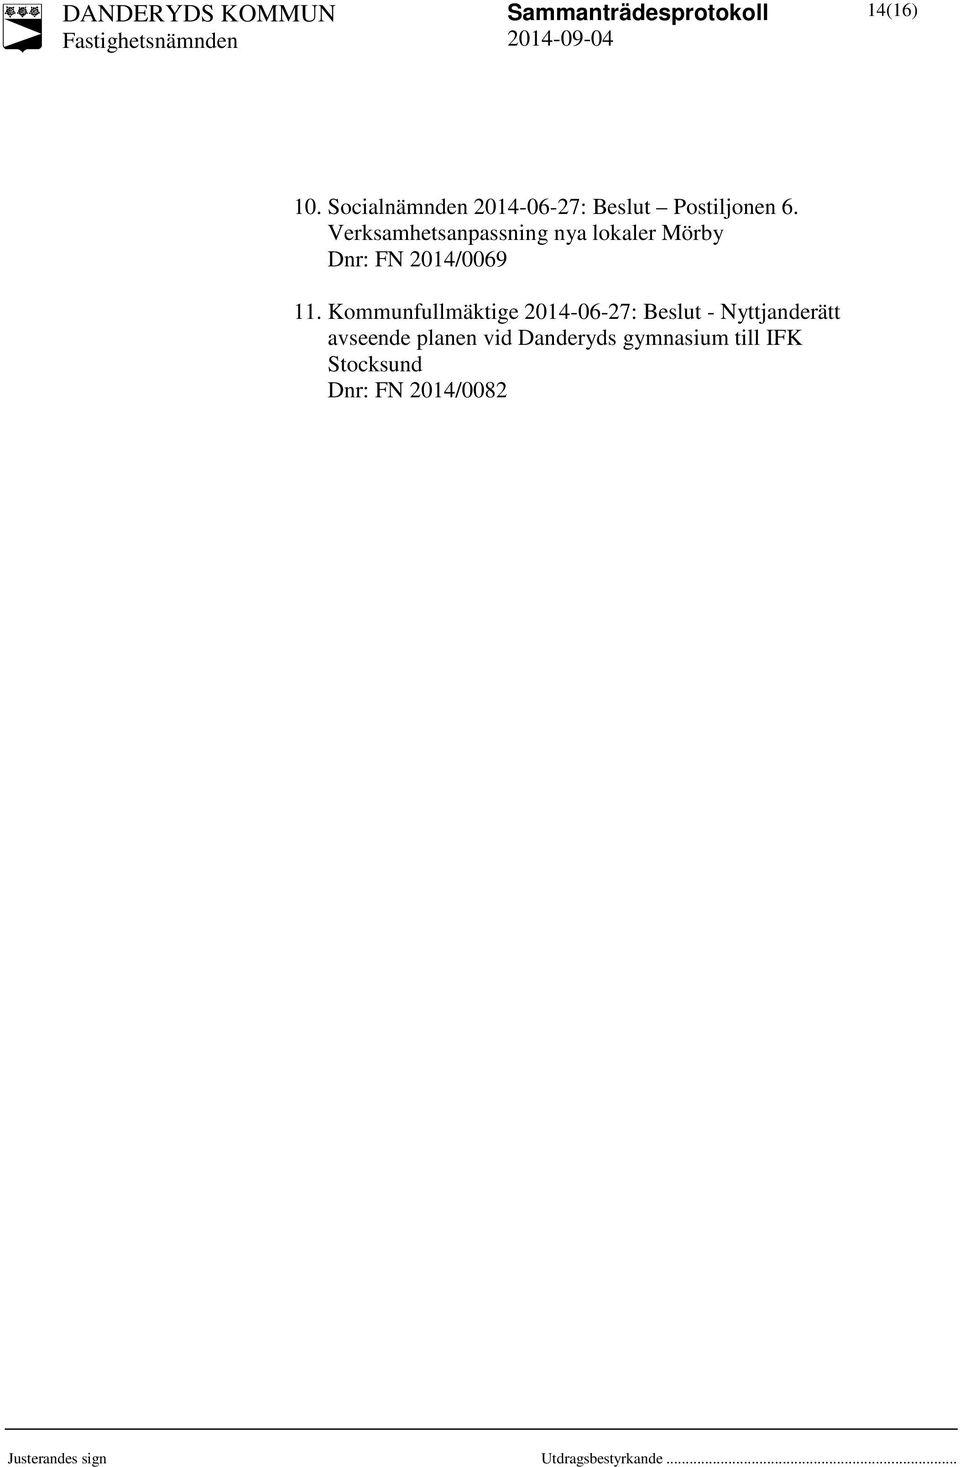 Kommunfullmäktige 2014-06-27: Beslut - Nyttjanderätt avseende